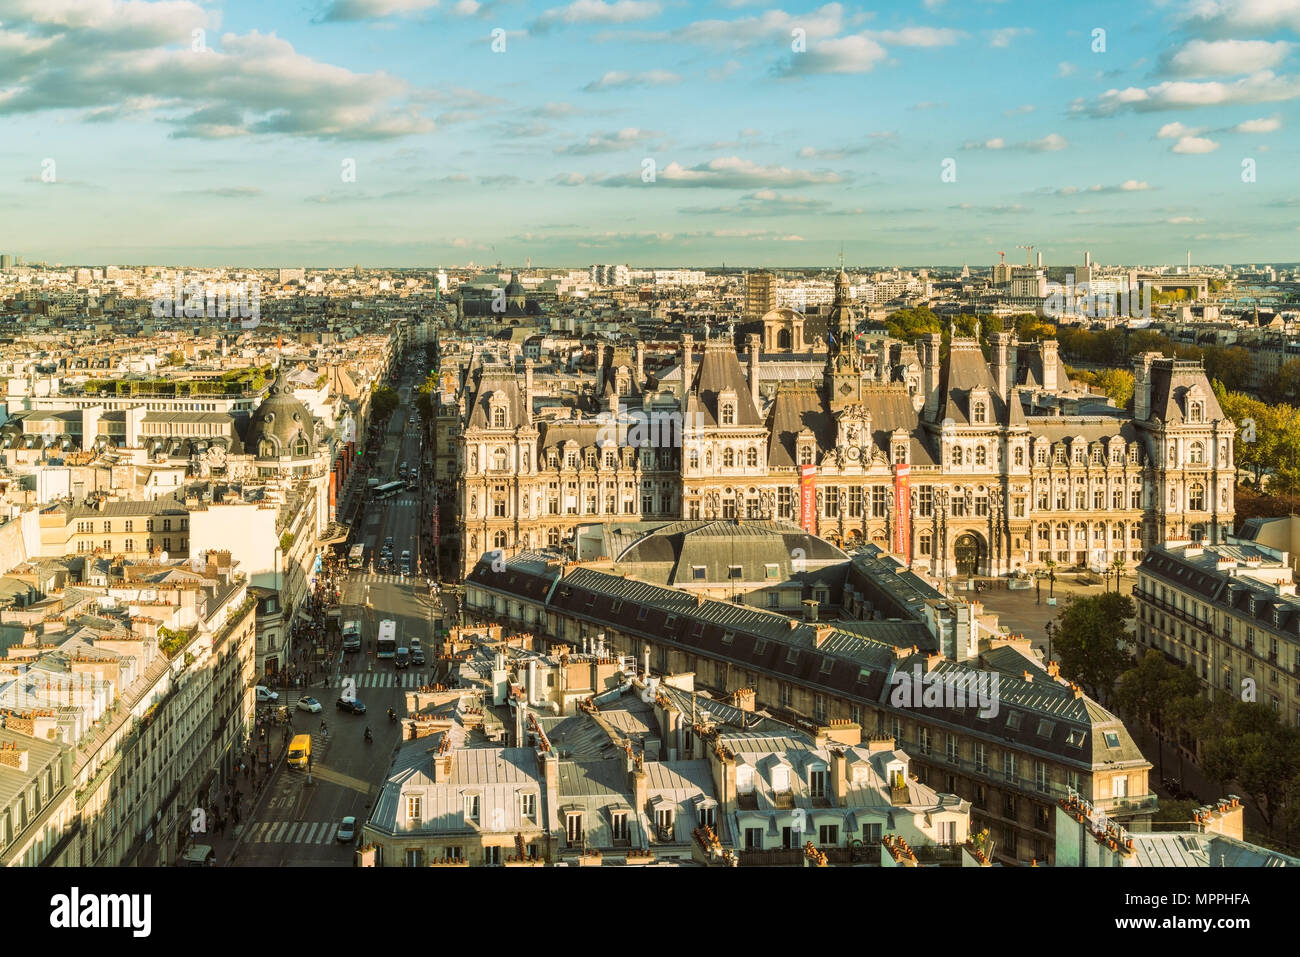 France, Paris, view to Square de la Tour Saint-Jacques from above Stock Photo